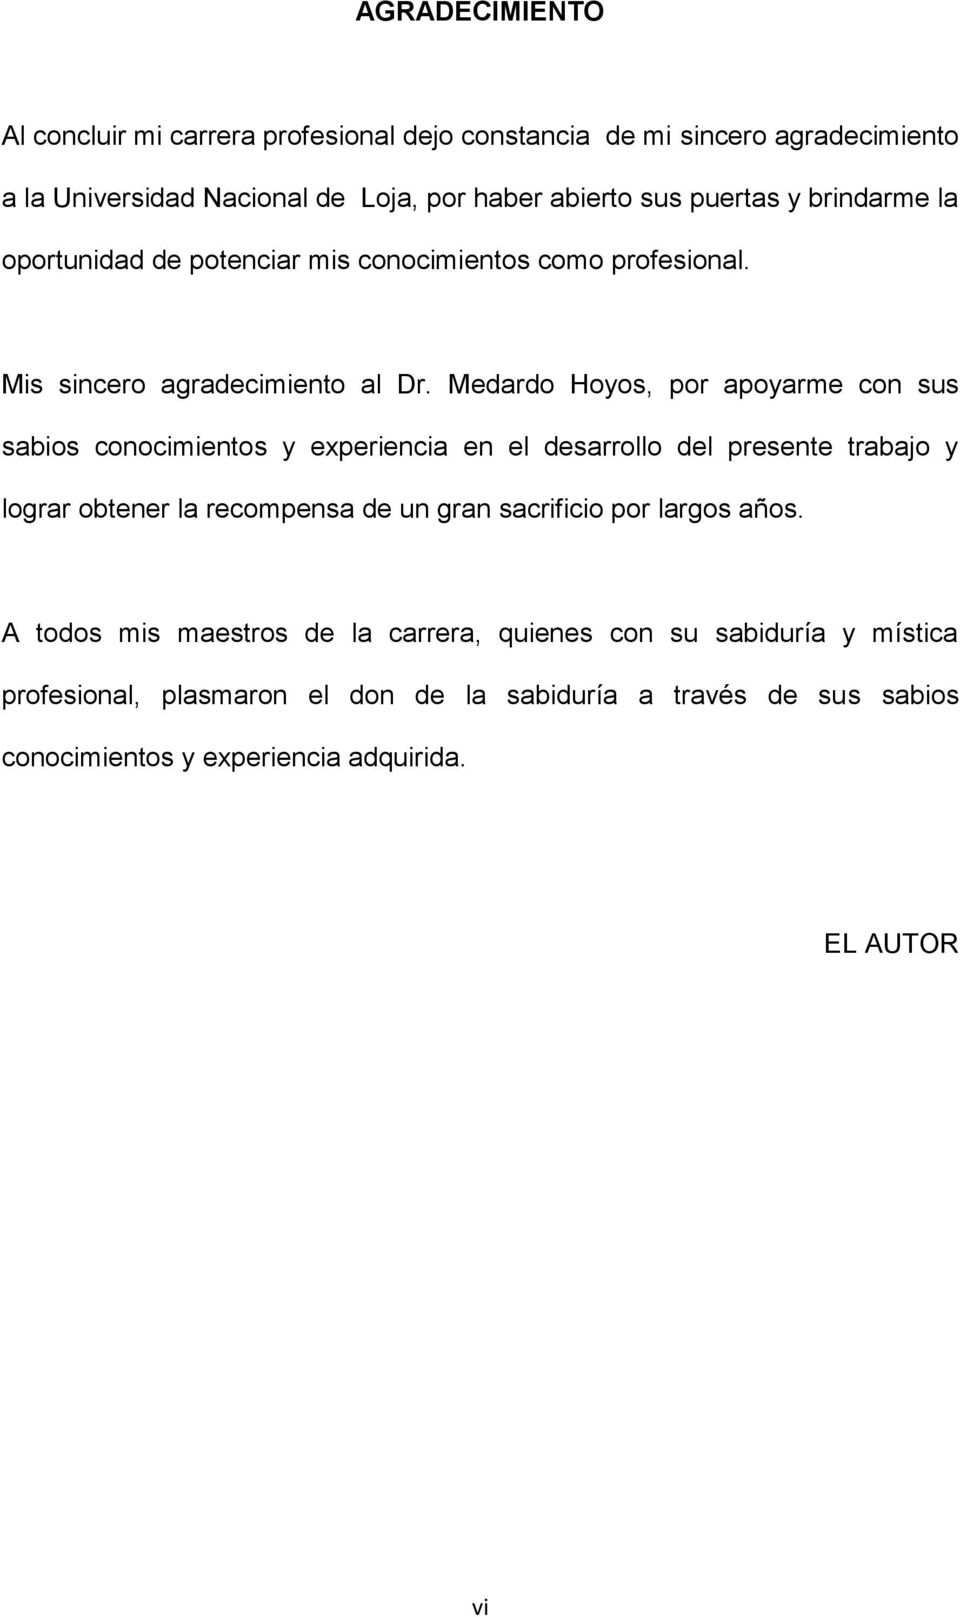 Medardo Hoyos, por apoyarme con sus sabios conocimientos y experiencia en el desarrollo del presente trabajo y lograr obtener la recompensa de un gran